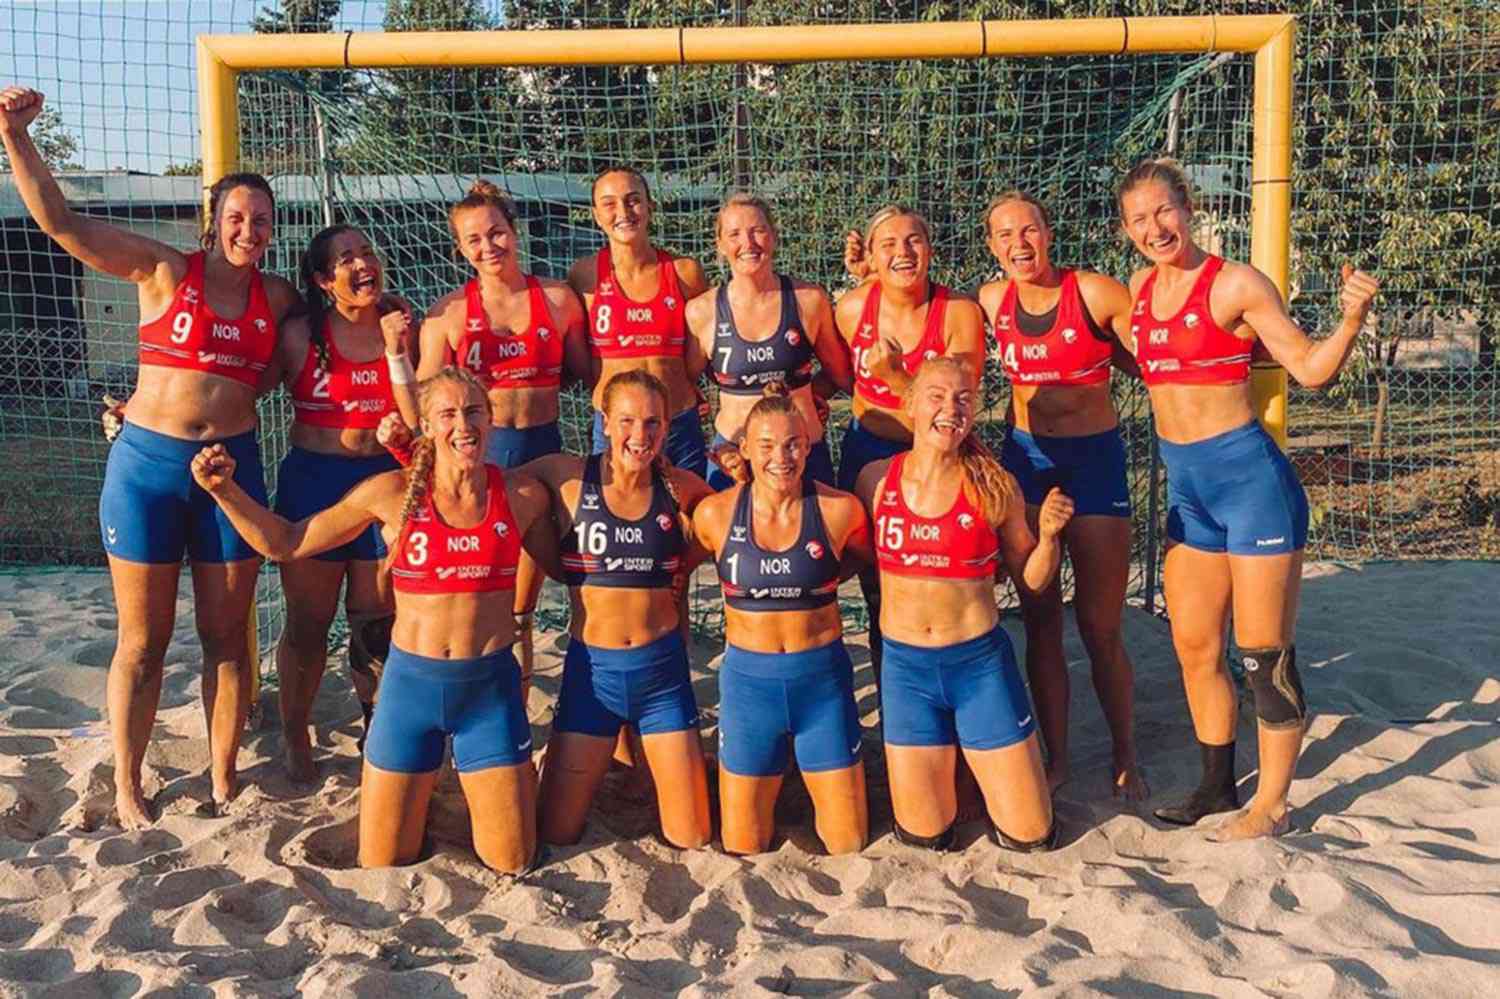 Norwegian Women's handball team